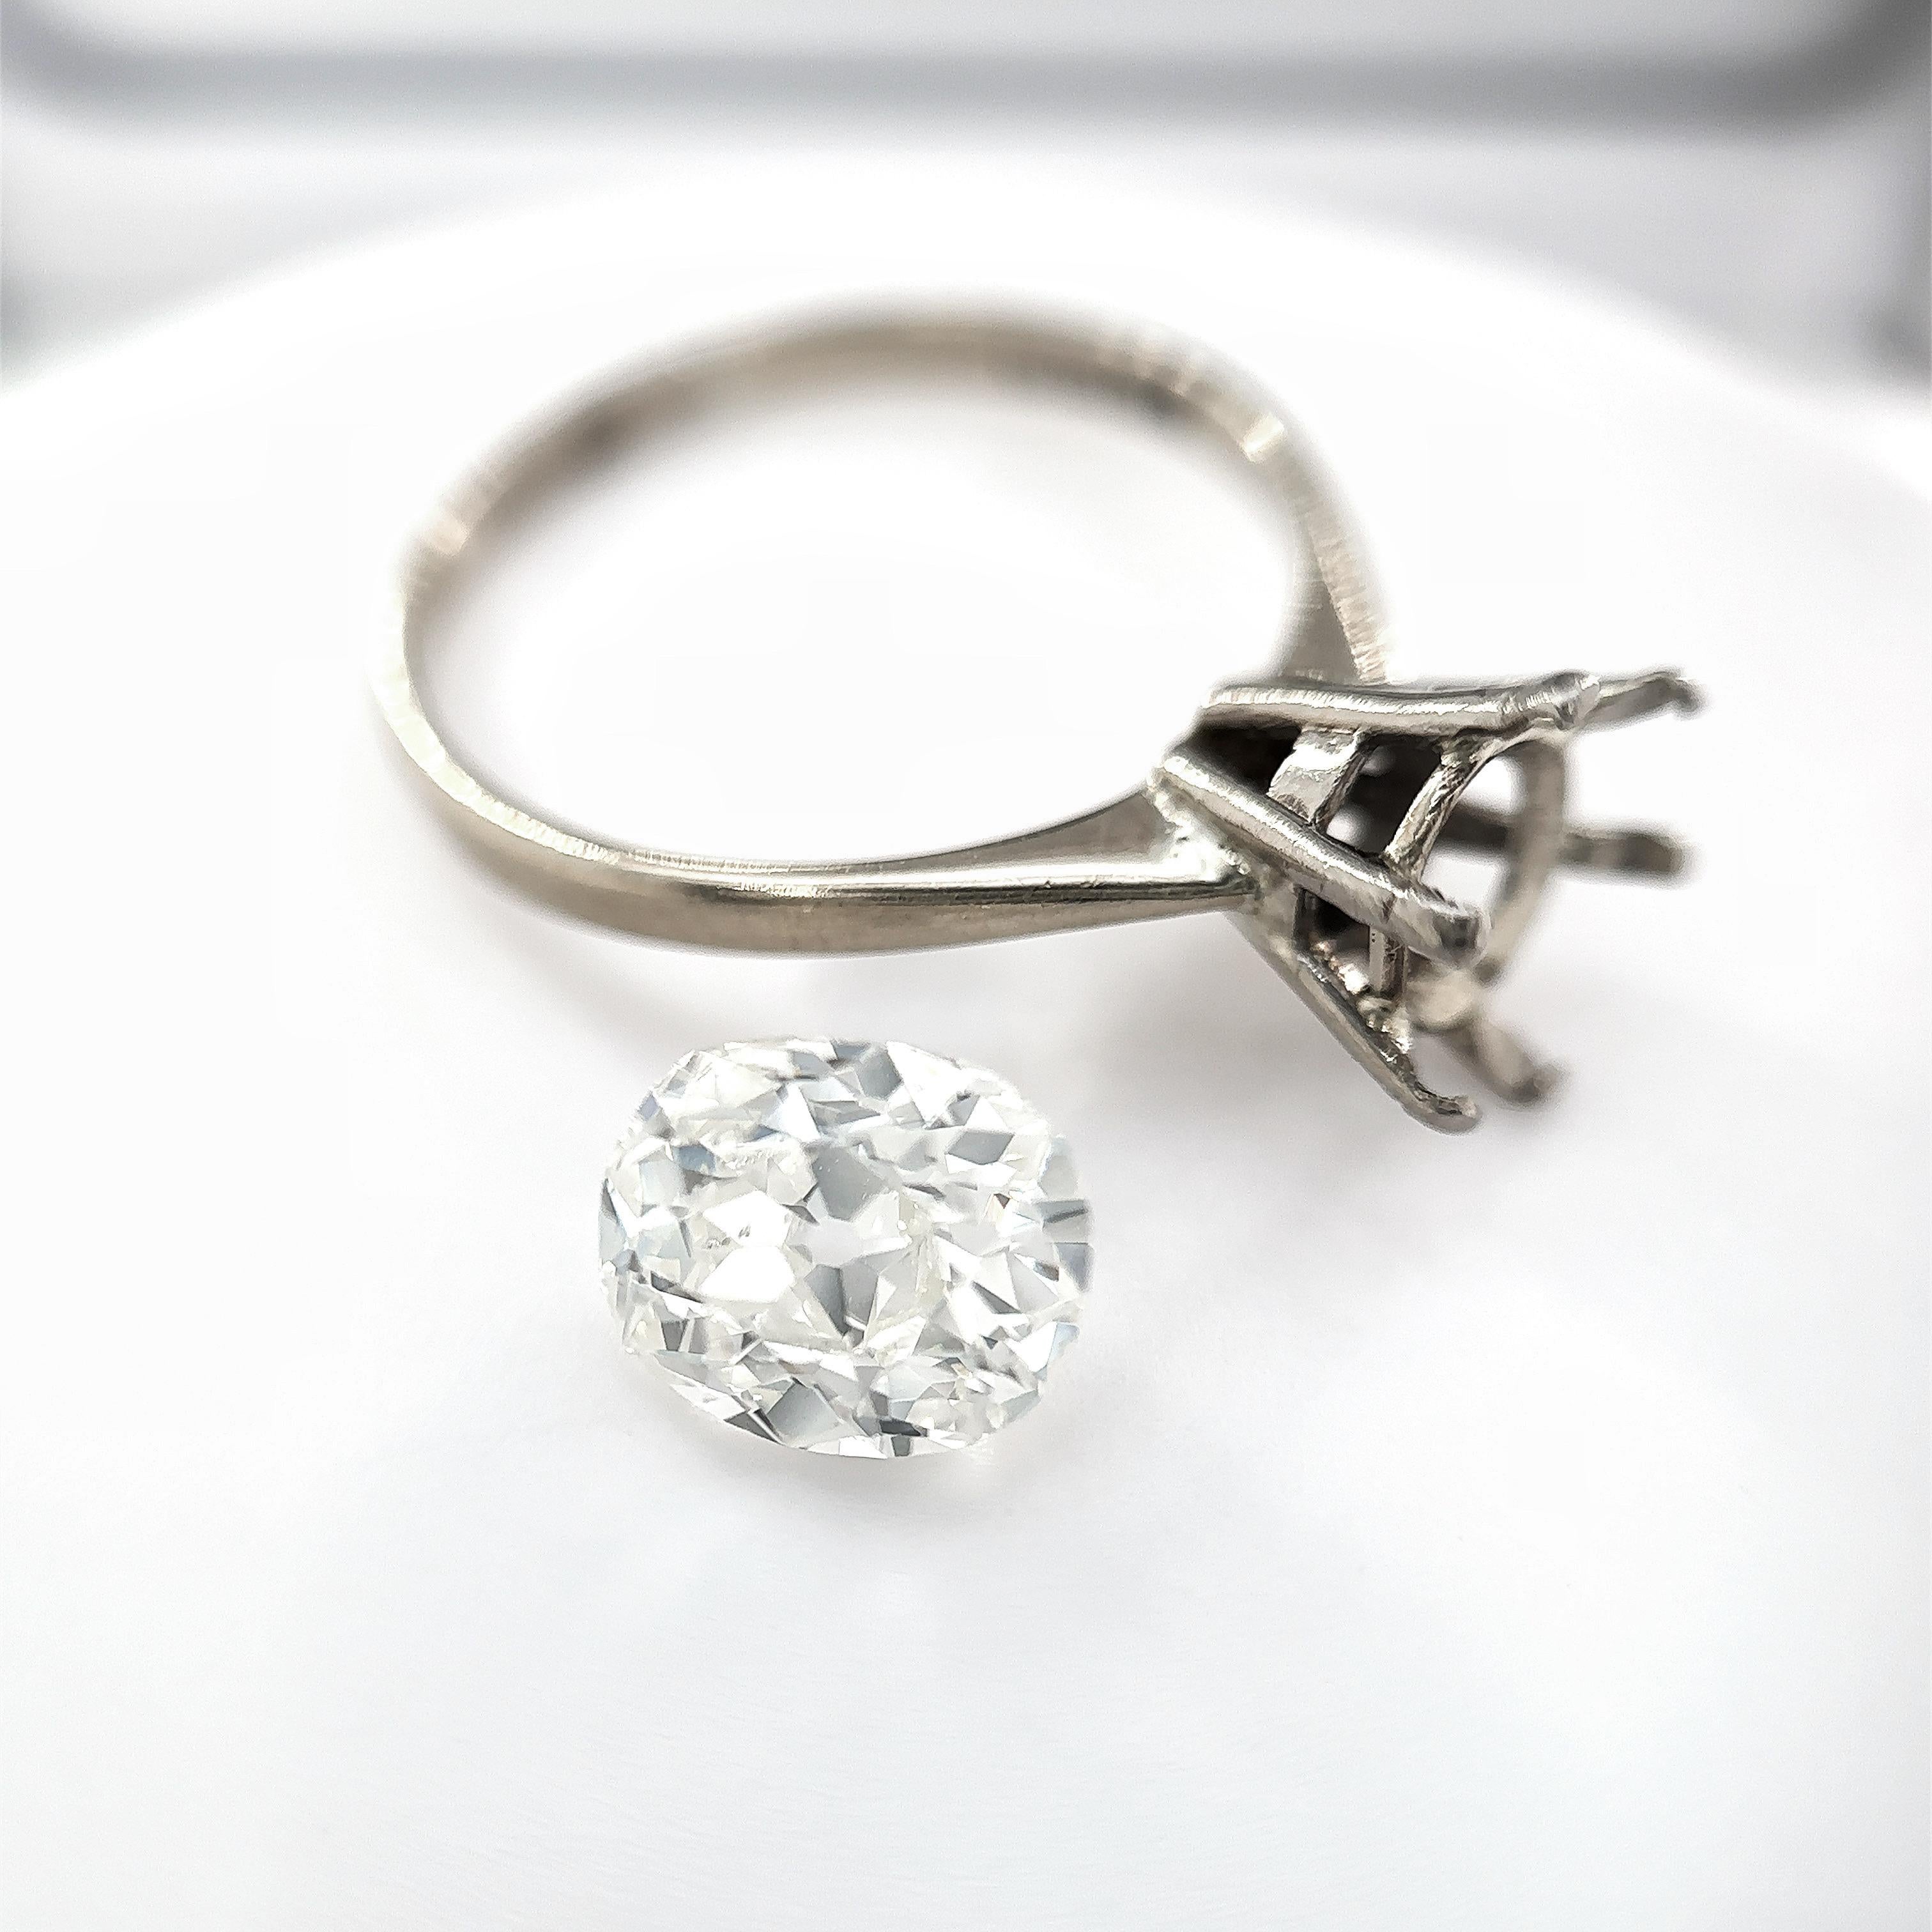 Cette exquise bague en diamant taille ancienne de 1,69 carat est un véritable trésor intemporel. Réalisée avec la plus grande précision et le plus grand souci du détail, cette bague met en valeur la beauté et l'éclat exceptionnels d'un diamant rare